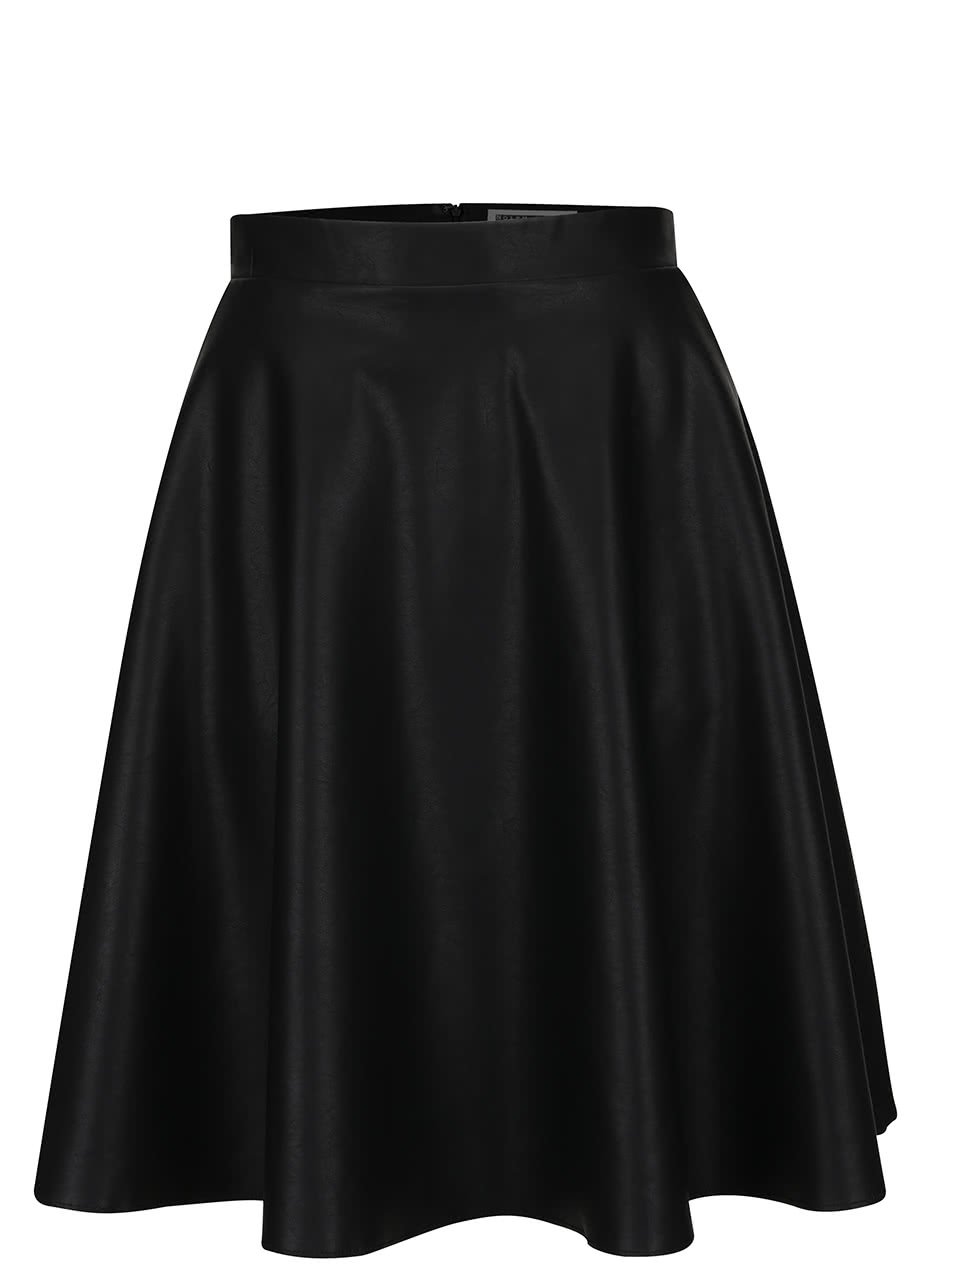 Černá koženková sukně s kapsami Noisy May Anna